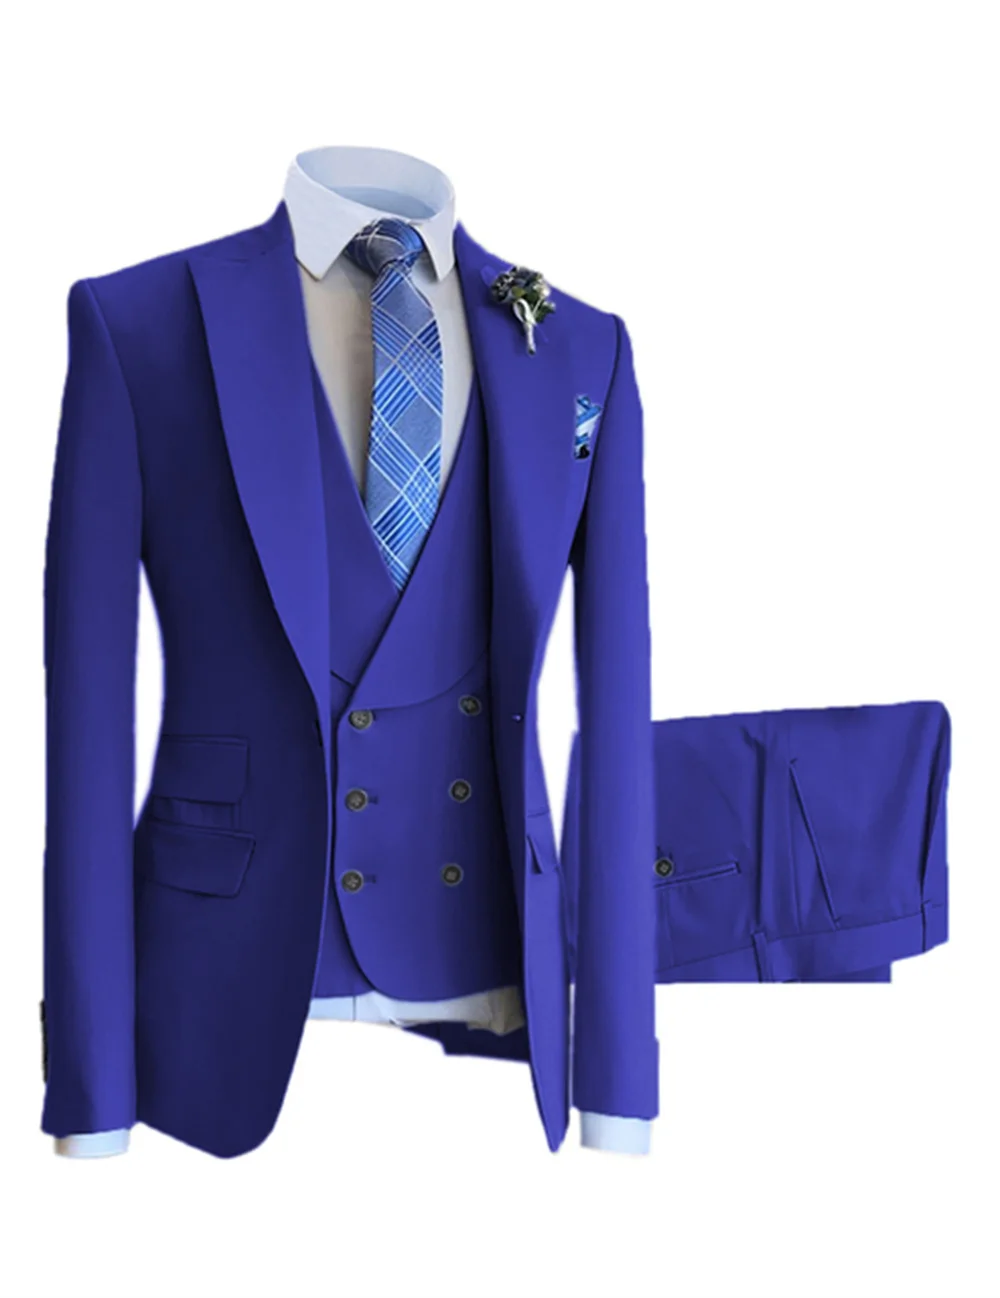 

Мужской деловой костюм из трех предметов, синий двубортный костюм для встреч вечерние вечеринок, свадеб, торжественных случаев, индивидуал...